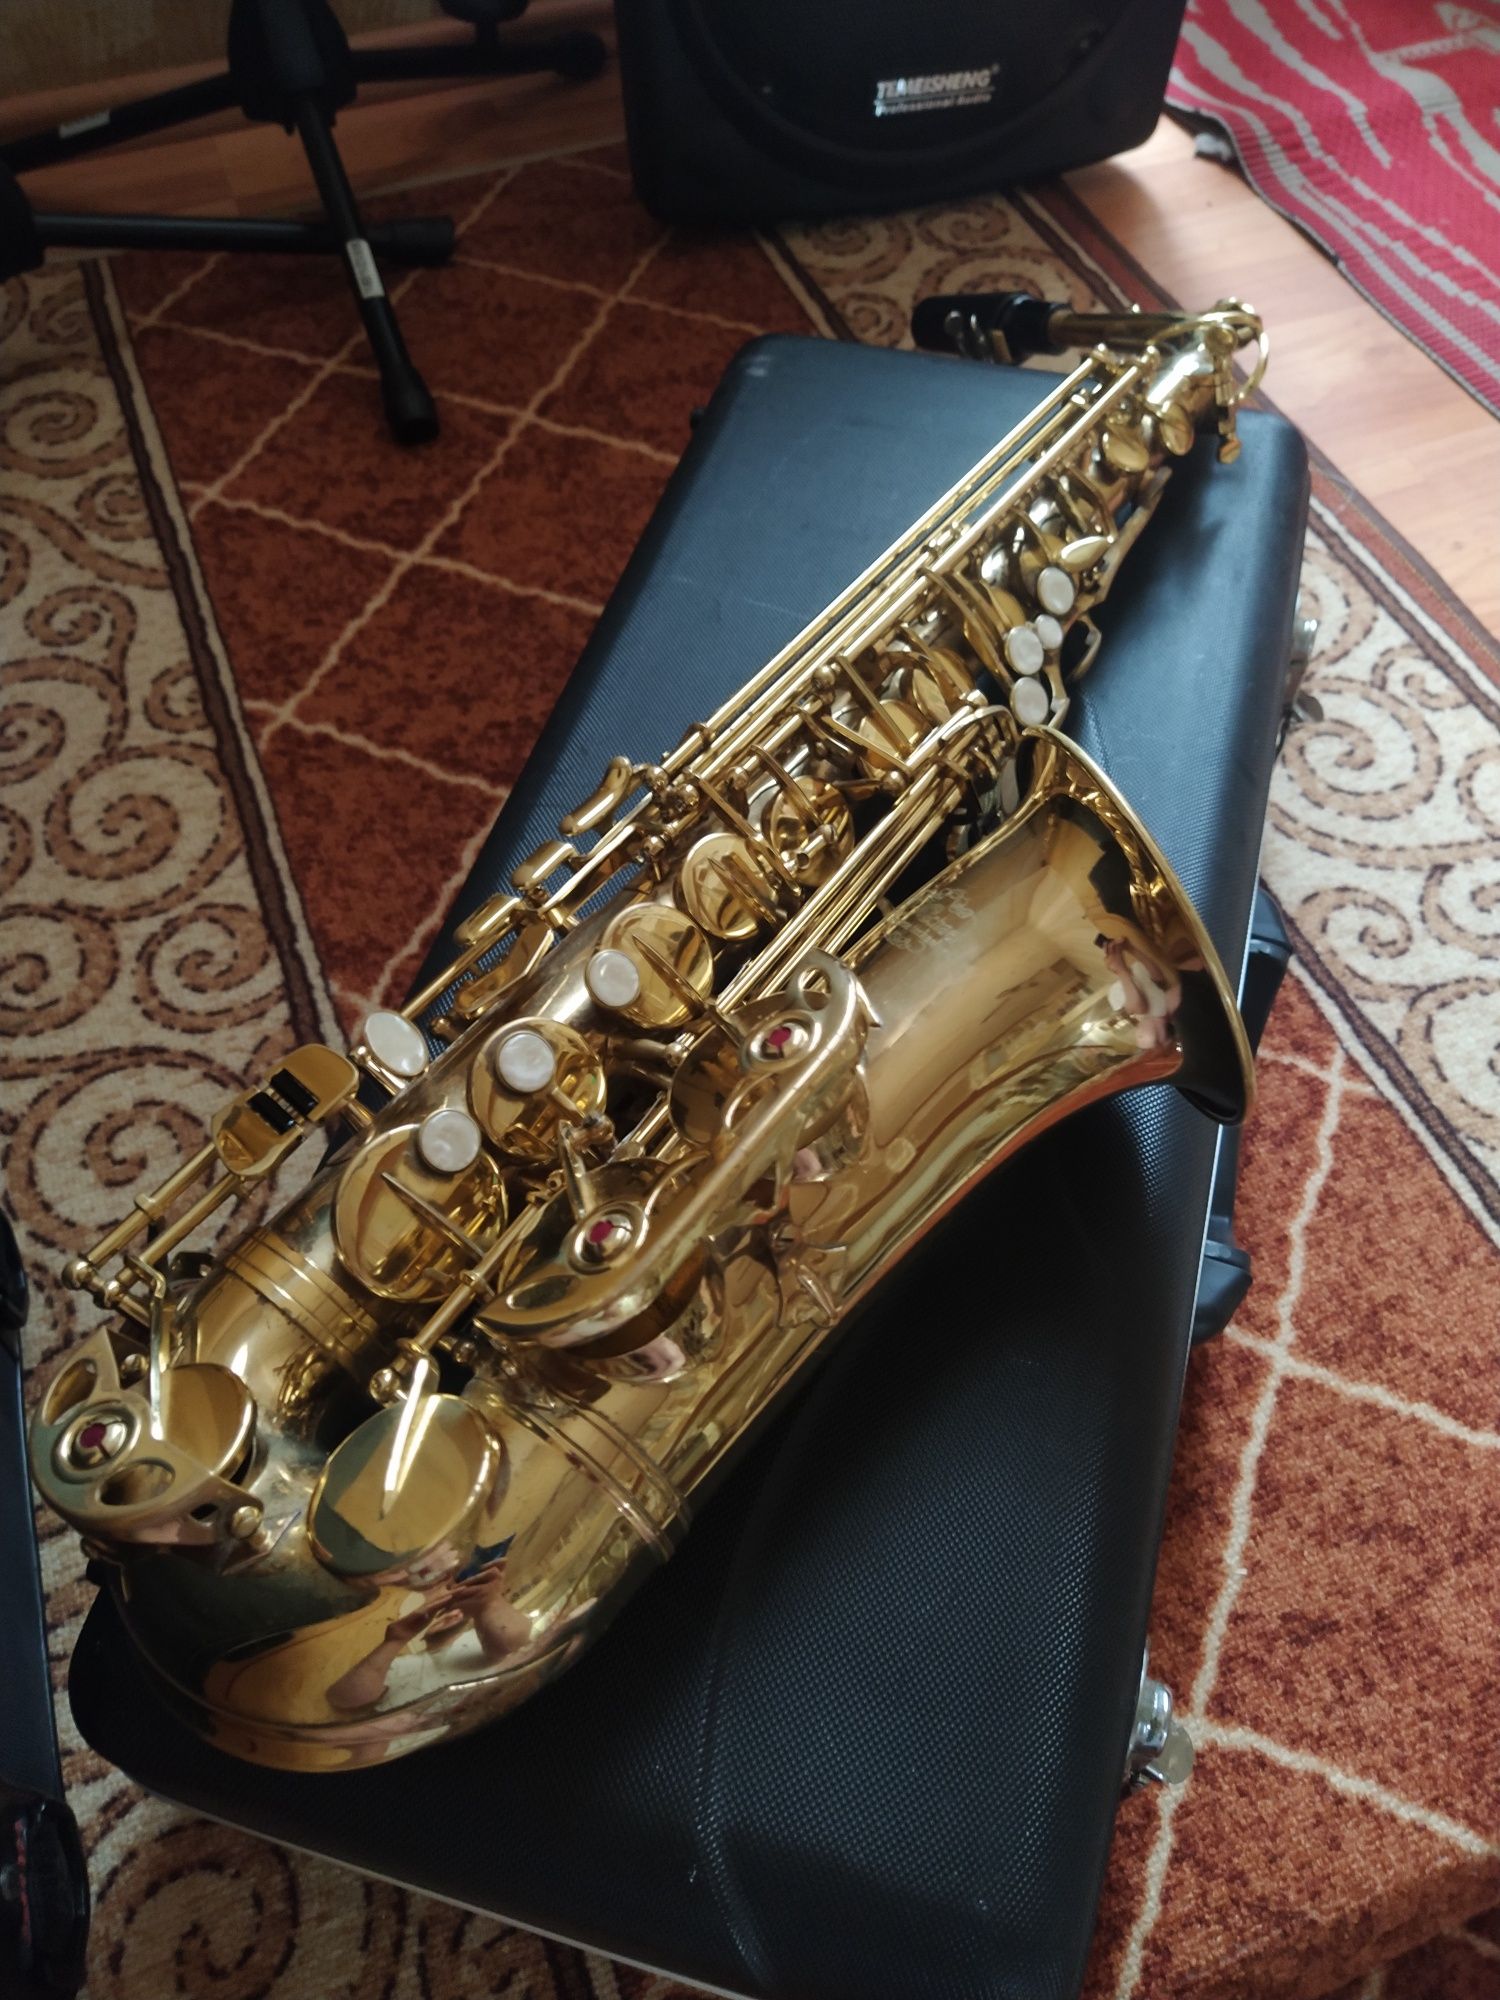 Vând saxofon J.Michael cu toate accesoriile ton bun 
Preț 350€ neg.. m